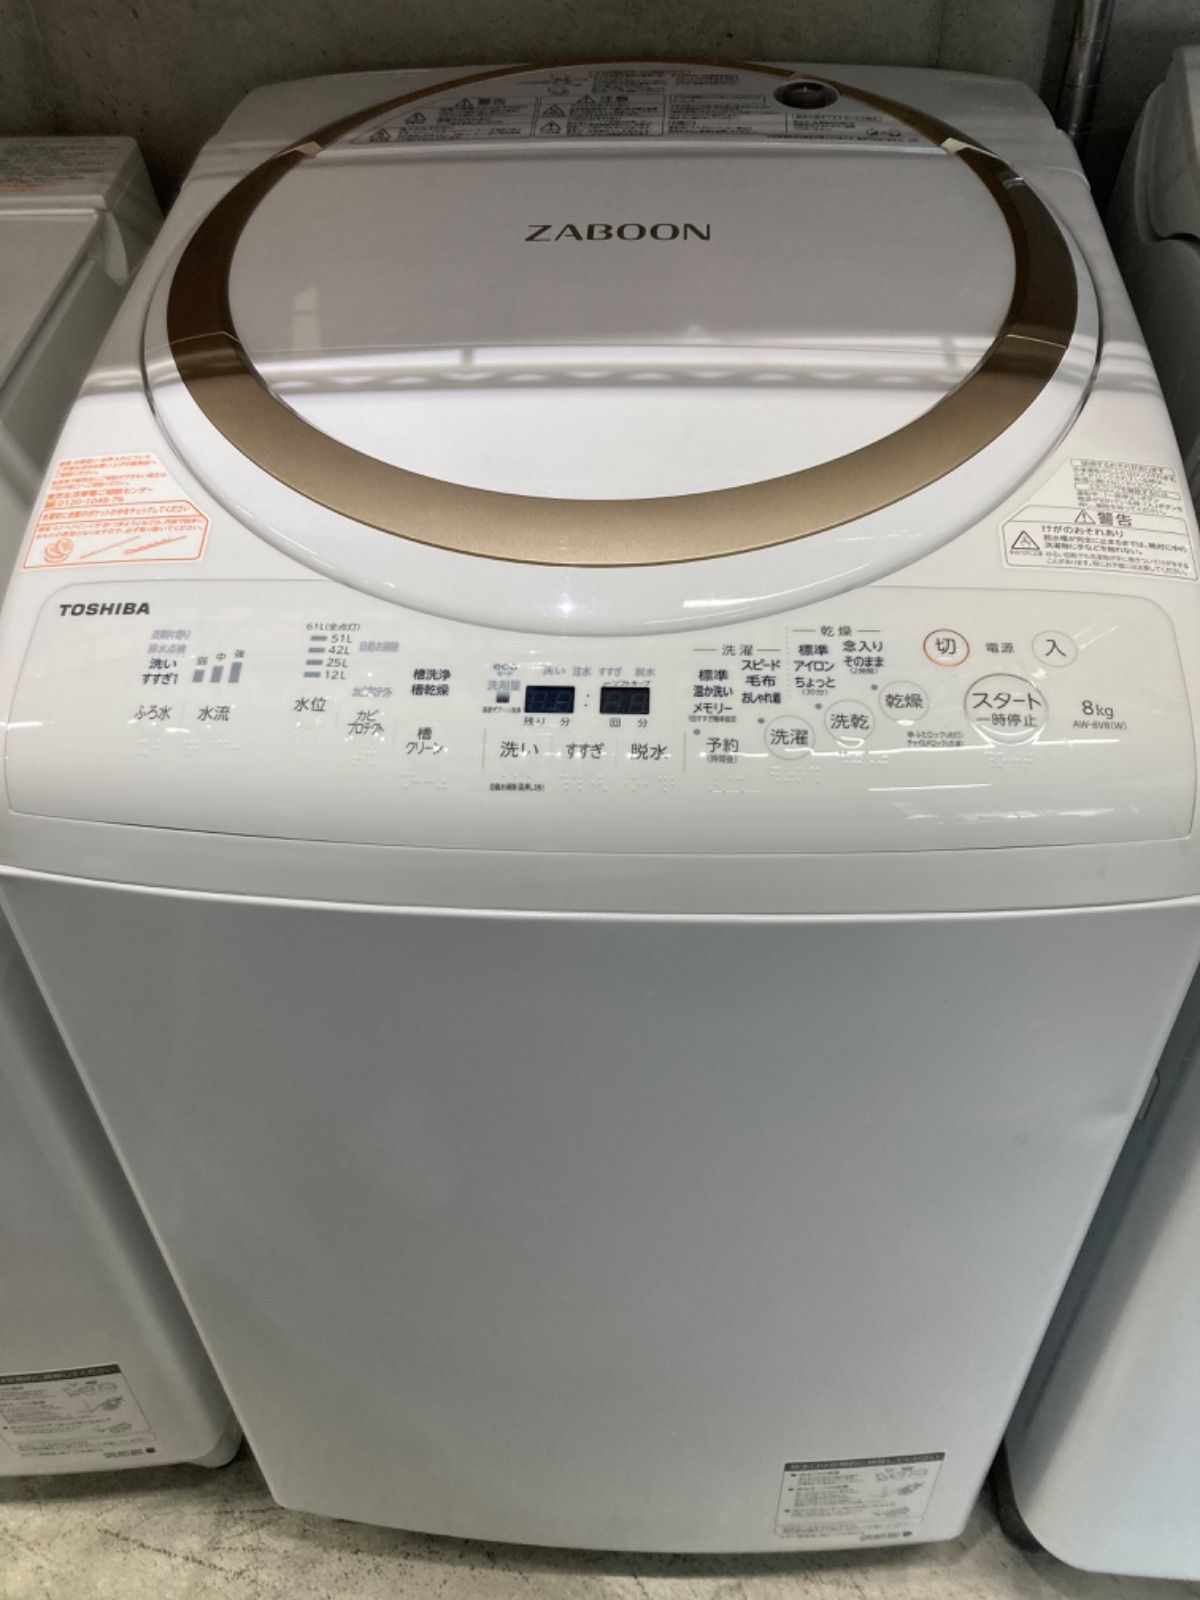 東芝 タテ型洗濯乾燥機 ZABOON 8kg AW-8V6 2018年製容量洗濯8kg乾燥45kg